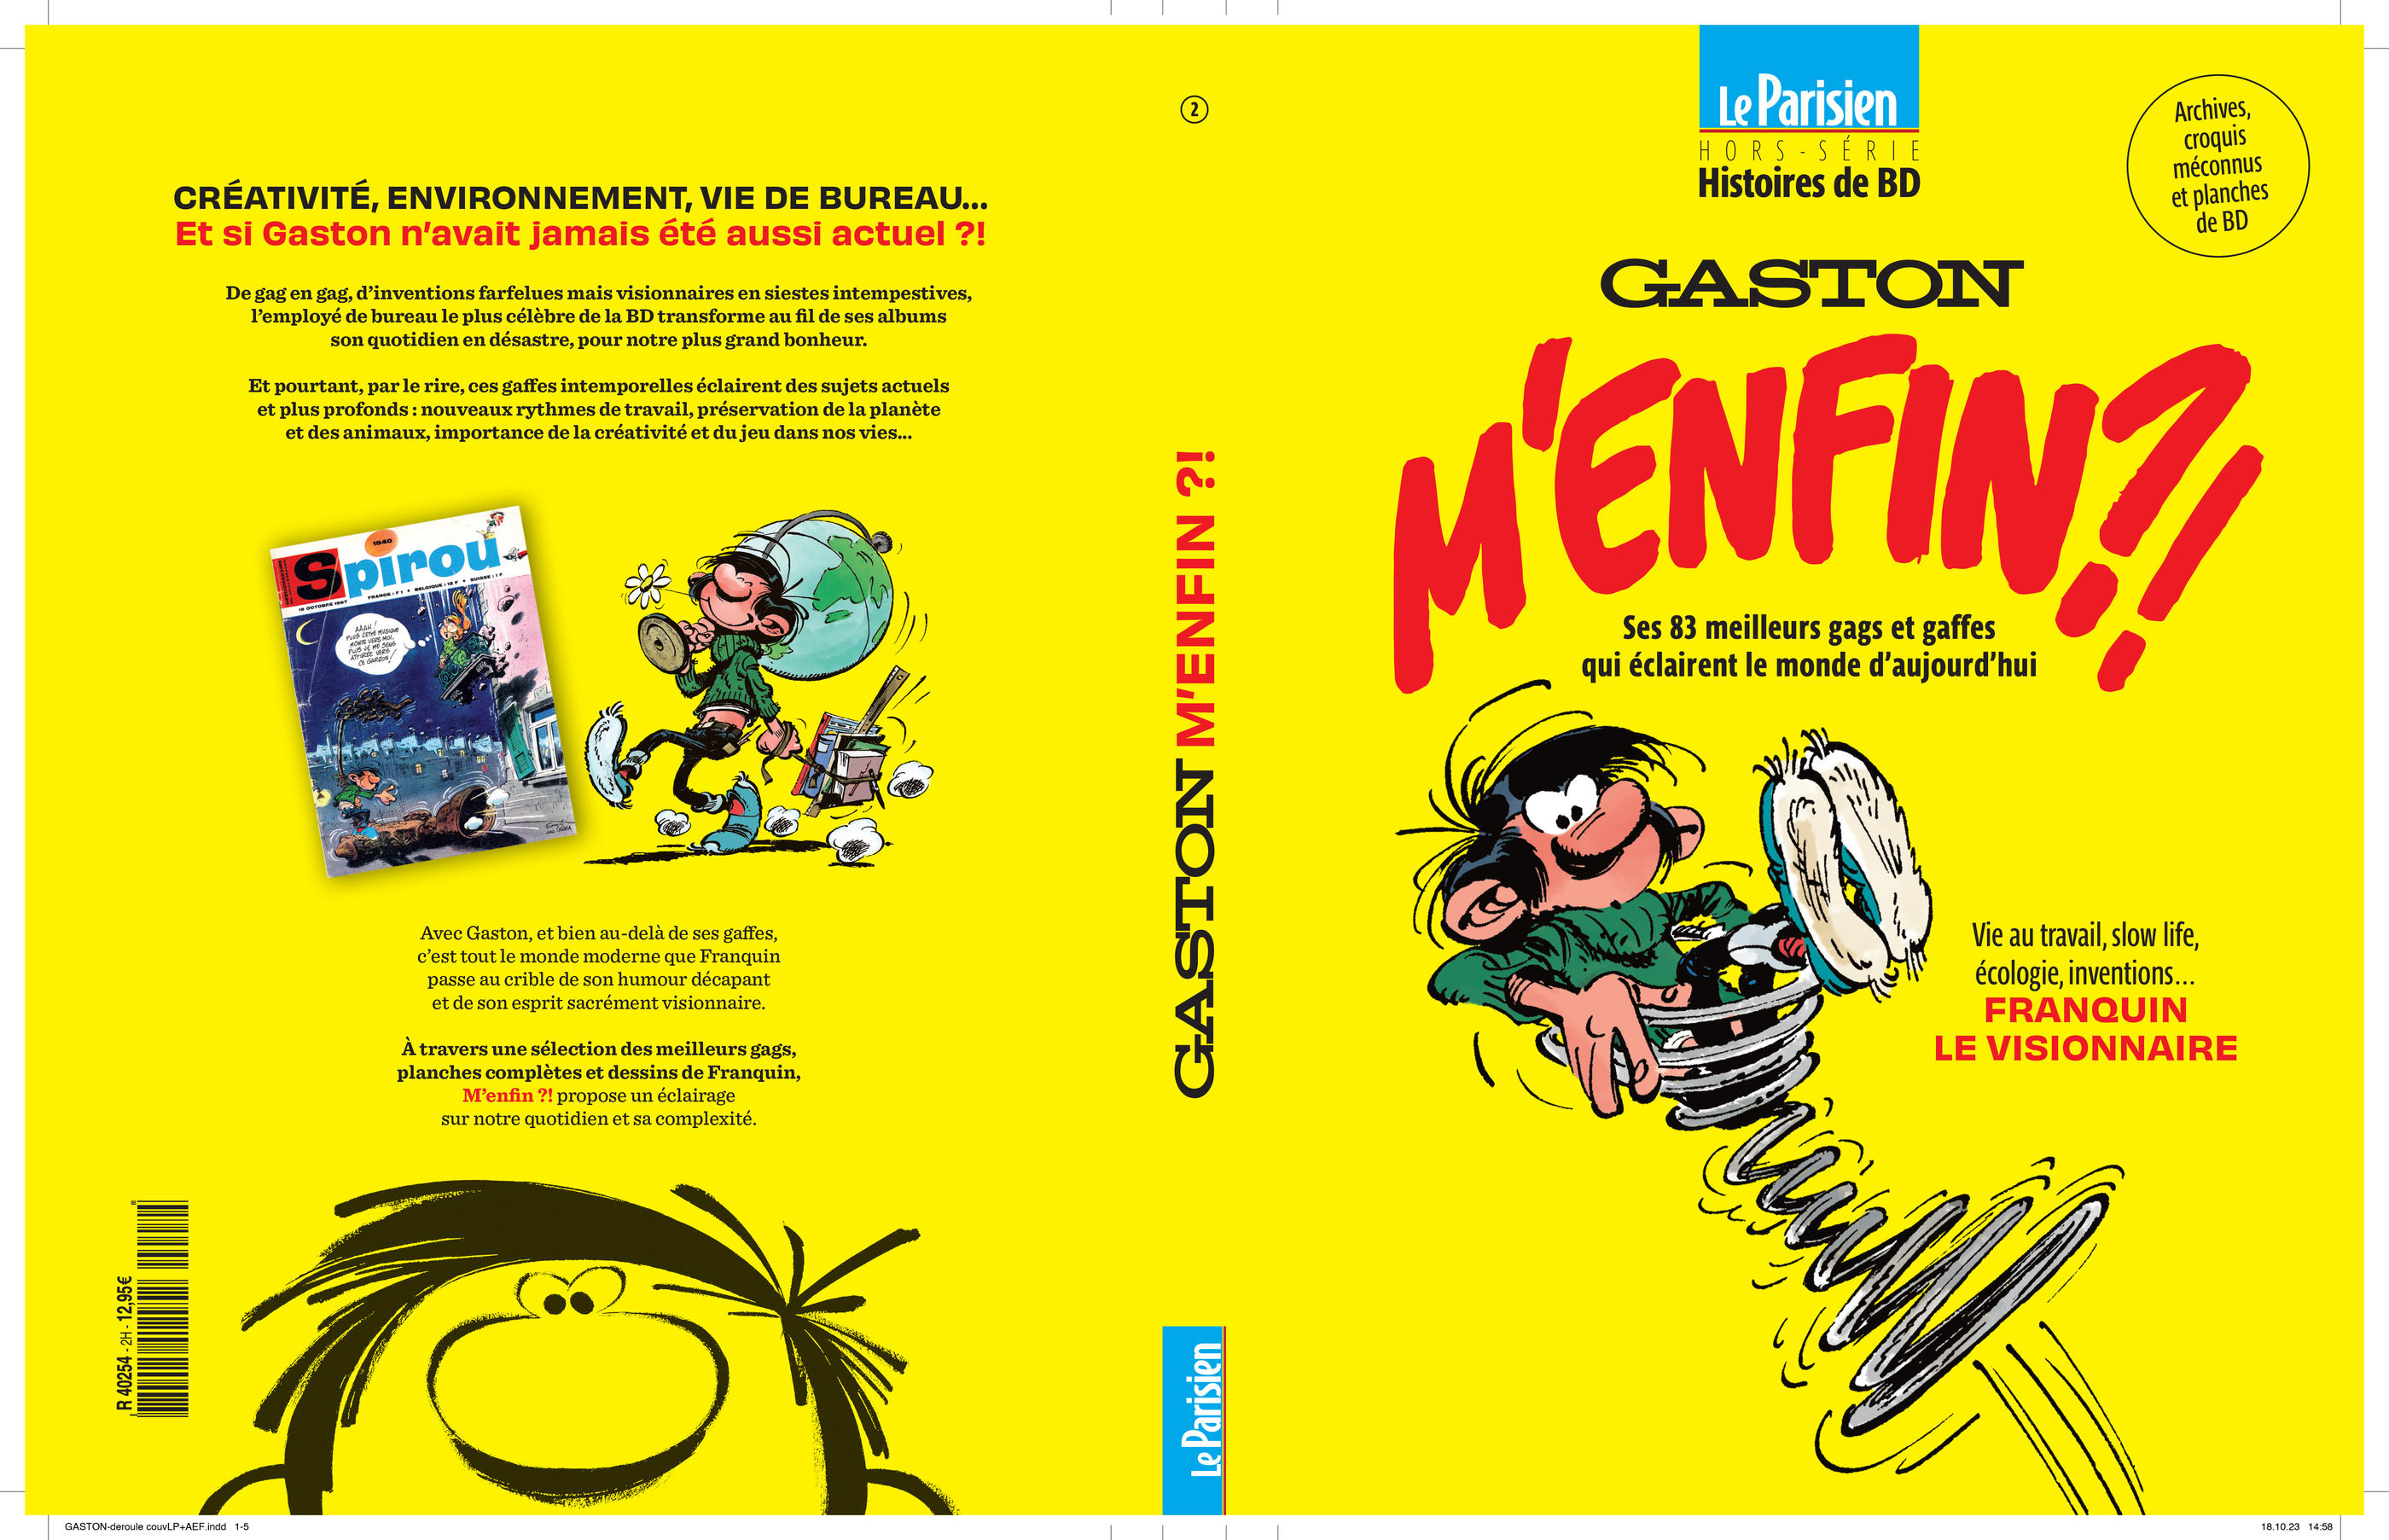 Le deuxième hors-série « Histoires de BD » est consacré à Gaston Lagaffe. Le Parisien